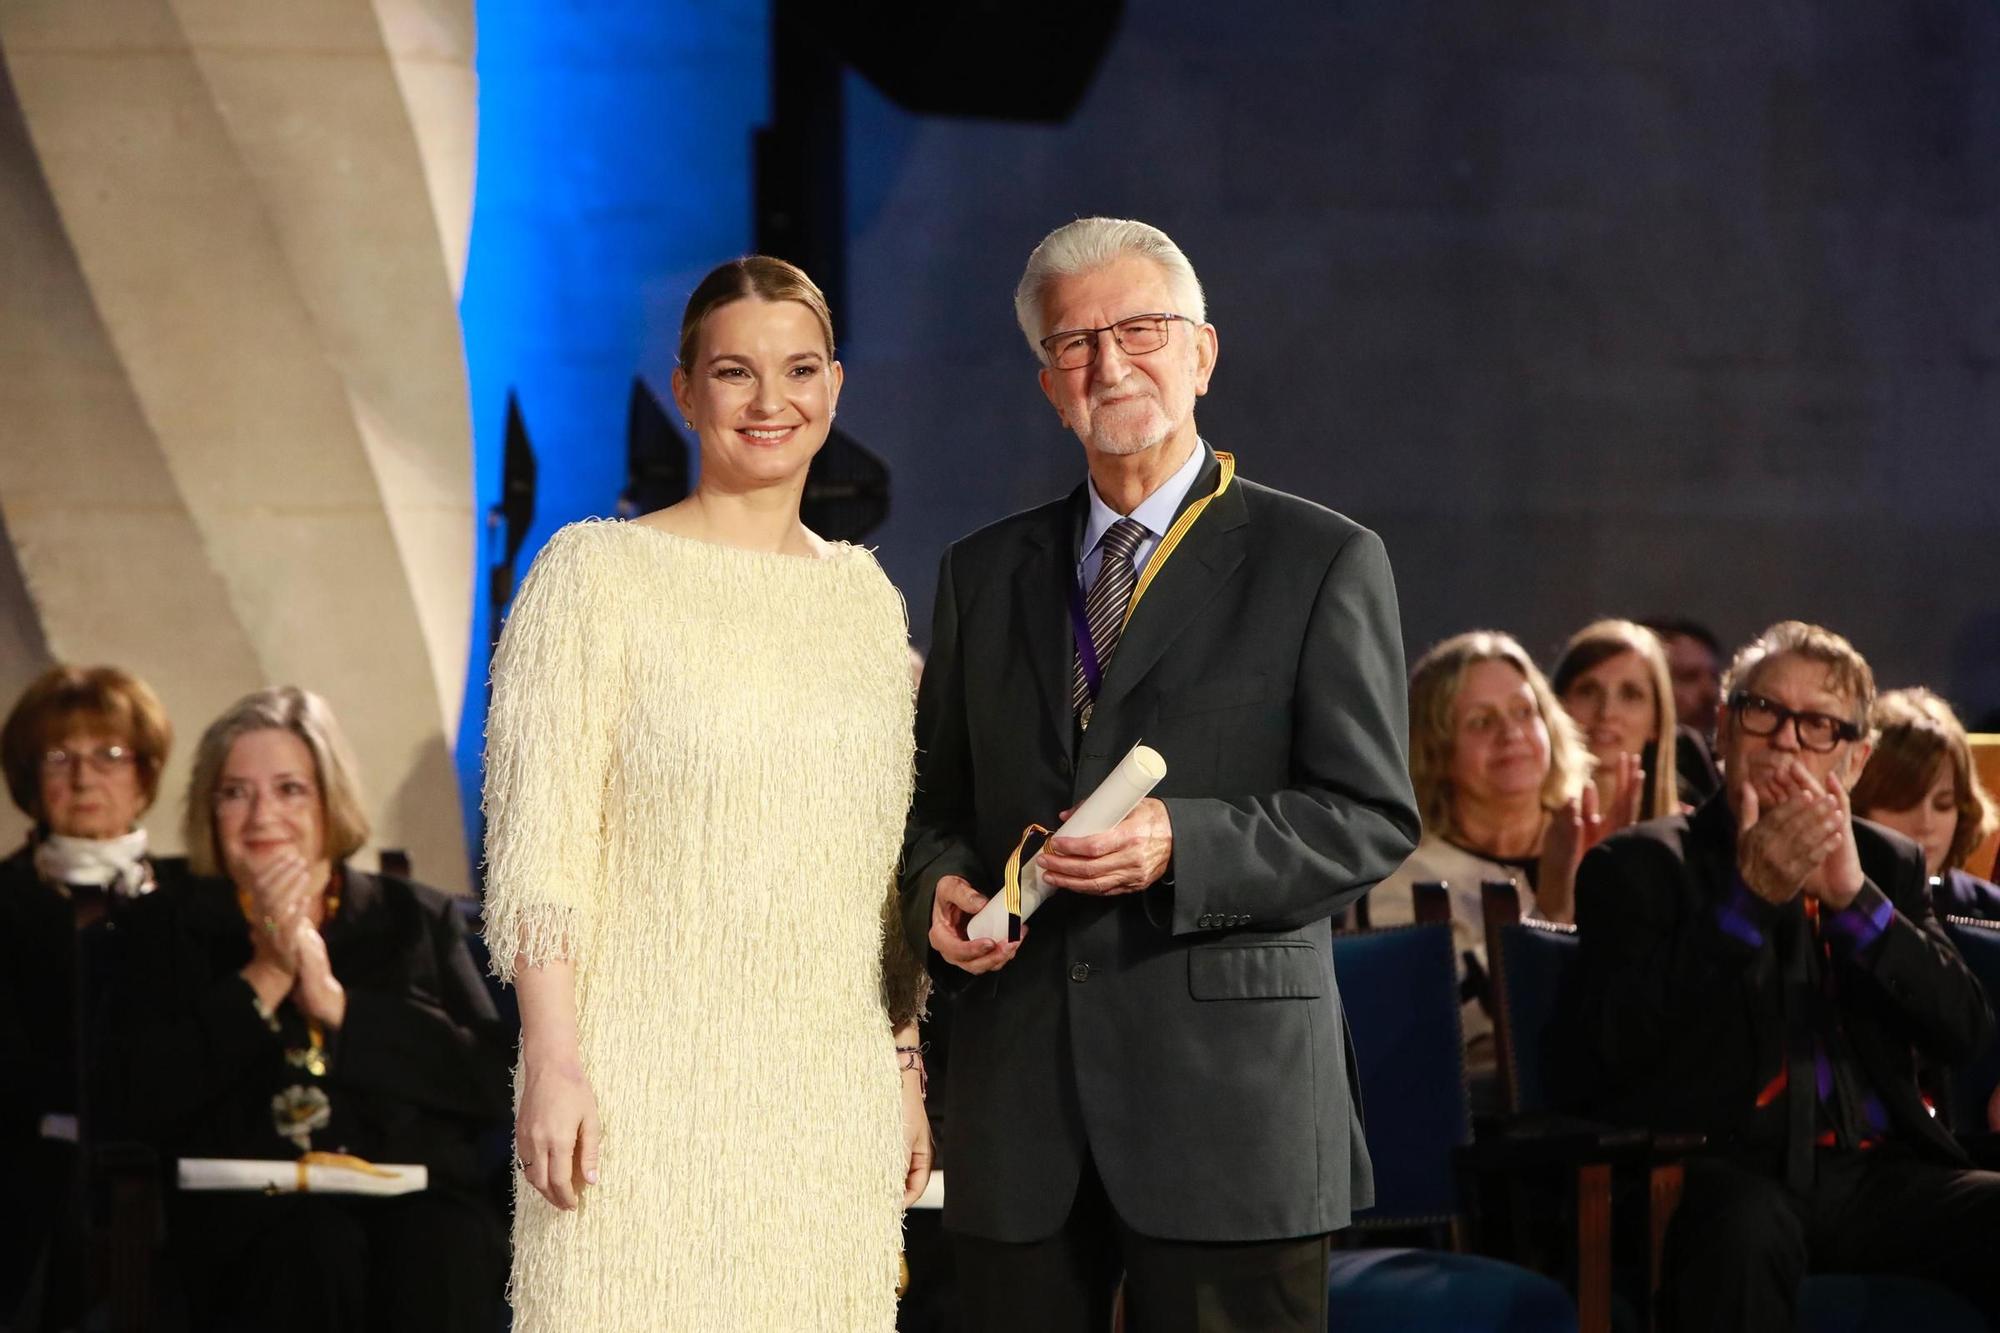 Entrega de las Medallas de Oro de Baleares y los Premios Ramon Llull